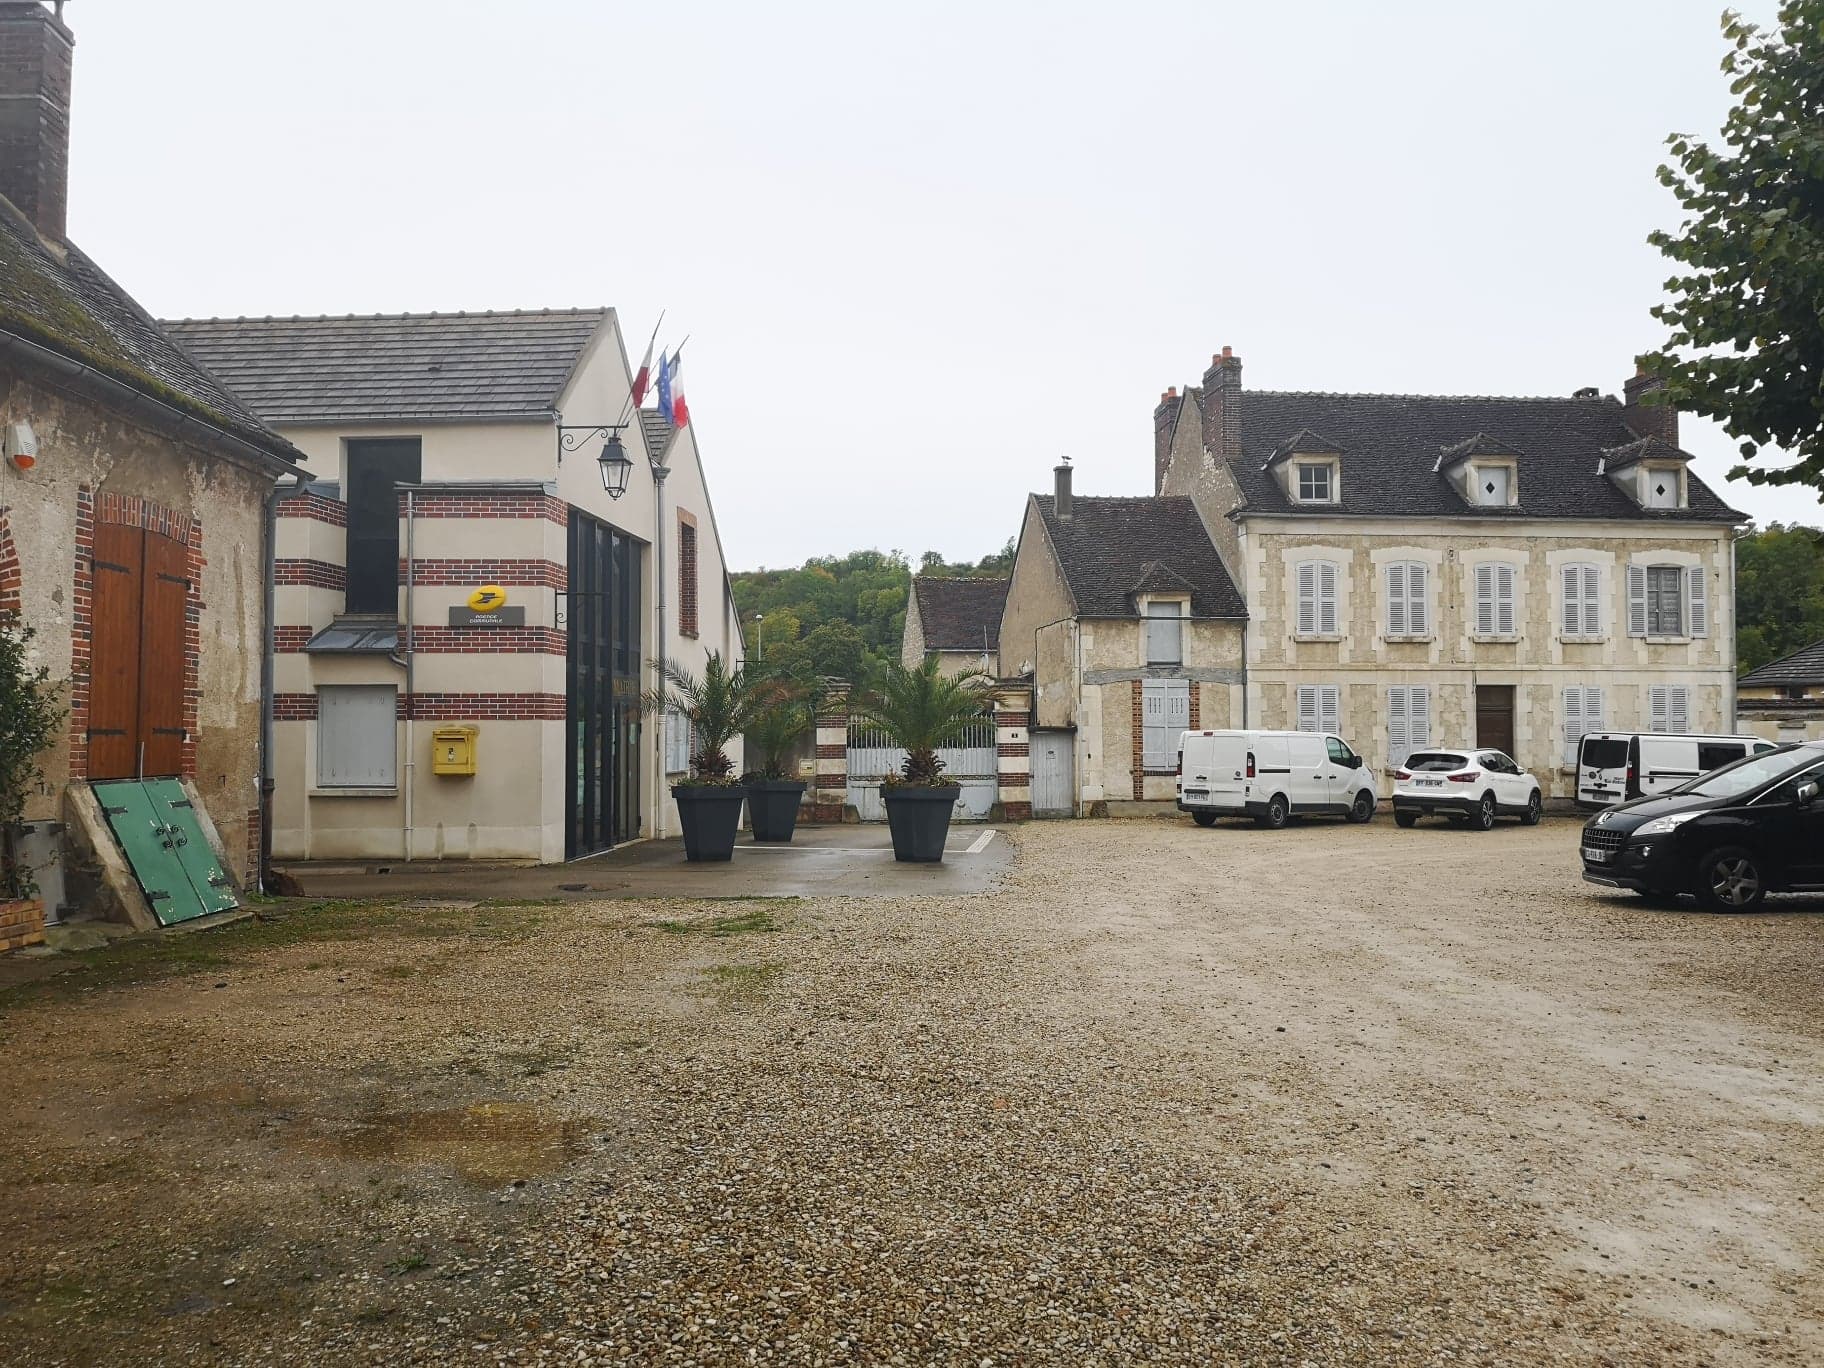 Missions :

Nous recherchons actuellement un.e candidat.e à la gérance du café multiservice à Bassou, qui est ouvert dans le cadre de l’initiative « 1000 cafés ». Le besoin en personnel étant d’1,6 ETP (équivalent temps plein), les candidatures de binômes sont encouragées. Le/la gérant.e peut en effet être accompagné.e d’une personne salariée par le café.

Bassou est une commune rurale de 880 habitants située en région Bourgogne Franche-Comté. Elle se trouve à 15 kilomètres d’Auxerre, préfecture du département. Le village est traversé par l’Yonne, rivière qui donne son nom au département, et permet aux habitants et aux touristes de profiter des berges durant la saison estivale. Également, Bassou est relié aux très attractives routes de la Loire à vélo. Le tourisme fluvial y est aussi développé. De nombreux vide-greniers, des marchés de producteurs locaux ou encore le festival de l’escargot, dont Bassou est la capitale, viennent animer la vie de village. Très dynamique, l’équipe municipale met tout en œuvre pour offrir un lieu de convivialité multiservices à destination des habitants. Elle s’engage à fédérer autour de ce projet et reste à l’écoute des futurs gérants dans l’idée de co-construire un projet pérenne sur son territoire. 

Nous recherchons avant tout des personnalités garantissant la convivialité du lieu, capables de co-construire les services de proximité répondant aux besoins identifiés en lien avec la commune, en adhésion avec les valeurs de l’économie sociale et solidaire. Des qualités de gérant, de commerçant ainsi qu’une réelle volonté d’entreprendre sont clés pour ce poste.

Le candidat ou la candidate à la gérance doit remplir les conditions liées à l’octroi d’une licence de débit de boissons.

La restauration étant une activité socle pour ce projet, les candidats devront justifier d’une expérience en cuisine, et une bonne maîtrise des techniques culinaires. Les autres services pressentis sont : dépôt de pain,  Poste, relais colis.

La perspective de contribuer à la revitalisation rurale en prenant la gérance d’un café multiservice vous séduit ? Rejoignez maintenant l’initiative 1000 Cafés !

1000 cafés est une initiative du GROUPE SOS qui a pour but de recréer du lien social dans les communes rurales. Elle contribue à redynamiser les territoires par la création ou la reprise de cafés multiservice dans des communes de moins de 3 500 habitants qui n'ont plus de café ou risquent de le perdre.

Les principes de l'initiative “1000 cafés” du GROUPE SOS sont :

● Faire du café un espace de convivialité multiservice qui proposera un café et une gamme de services de proximité qui n’existent plus dans la commune
● Créer un café au plus près de chaque territoire : faire participer les habitants des communes, écouter leurs besoins et envies, en s’assurant que le café vivra pleinement demain
● Accompagner le café dans la création et la gestion au quotidien : faciliter l’accès aux locaux, mutualiser des fournisseurs, proposer des outils de gestion, accompagner les relations avec les institutions

L’initiative 1000 cafés a été lancée en septembre 2019 et nous comptons déjà un réseau de cafés multiservice en pleine croissance.

Si vous souhaitez vous lancer dans une aventure entrepreneuriale au service de la convivialité de votre village, si vous voulez être au cœur d’un projet pensé pour et par les habitants, alors portez-vous candidat !
Pour plus d’informations, rendez-vous sur notre site internet 1000cafés.org

Profil recherché : 

• Vous souhaitez vous engager en faveur de la ruralité et de la redynamisation des petites communes 
• Vous justifiez d’une expérience significative dans le secteur de la restauration et maitrisez les techniques culinaires essentielles, ainsi que les normes d’hygiène et de sécurité
• Vous êtes disponible et prêt à vous engager dans une démarche entrepreneuriale afin que le projet prenne corps au sein du village
• Vous avez des bases solides en gestion et faites preuve de rigueur et d’organisation
• Vous êtes fédérateur et maîtrisez les outils de communication
• Vous êtes motivé, sérieux, adaptable, proactif et avez un fort intérêt pour les valeurs de l’économie sociale et solidaire
• Vous savez gérer des situations difficiles en gardant votre sang-froid

Un logement est mis à disposition sur la commune. 

Rémunération de 1 700 € brut mensuel pour le/la gérant.e et intéressement à hauteur de 30 % sur le résultat net avant impôt.

Accompagnement vers l’ouverture : janvier à avril 2023

Ouverture envisagée : avril 2023 

Statut : Gérant.e mandataire